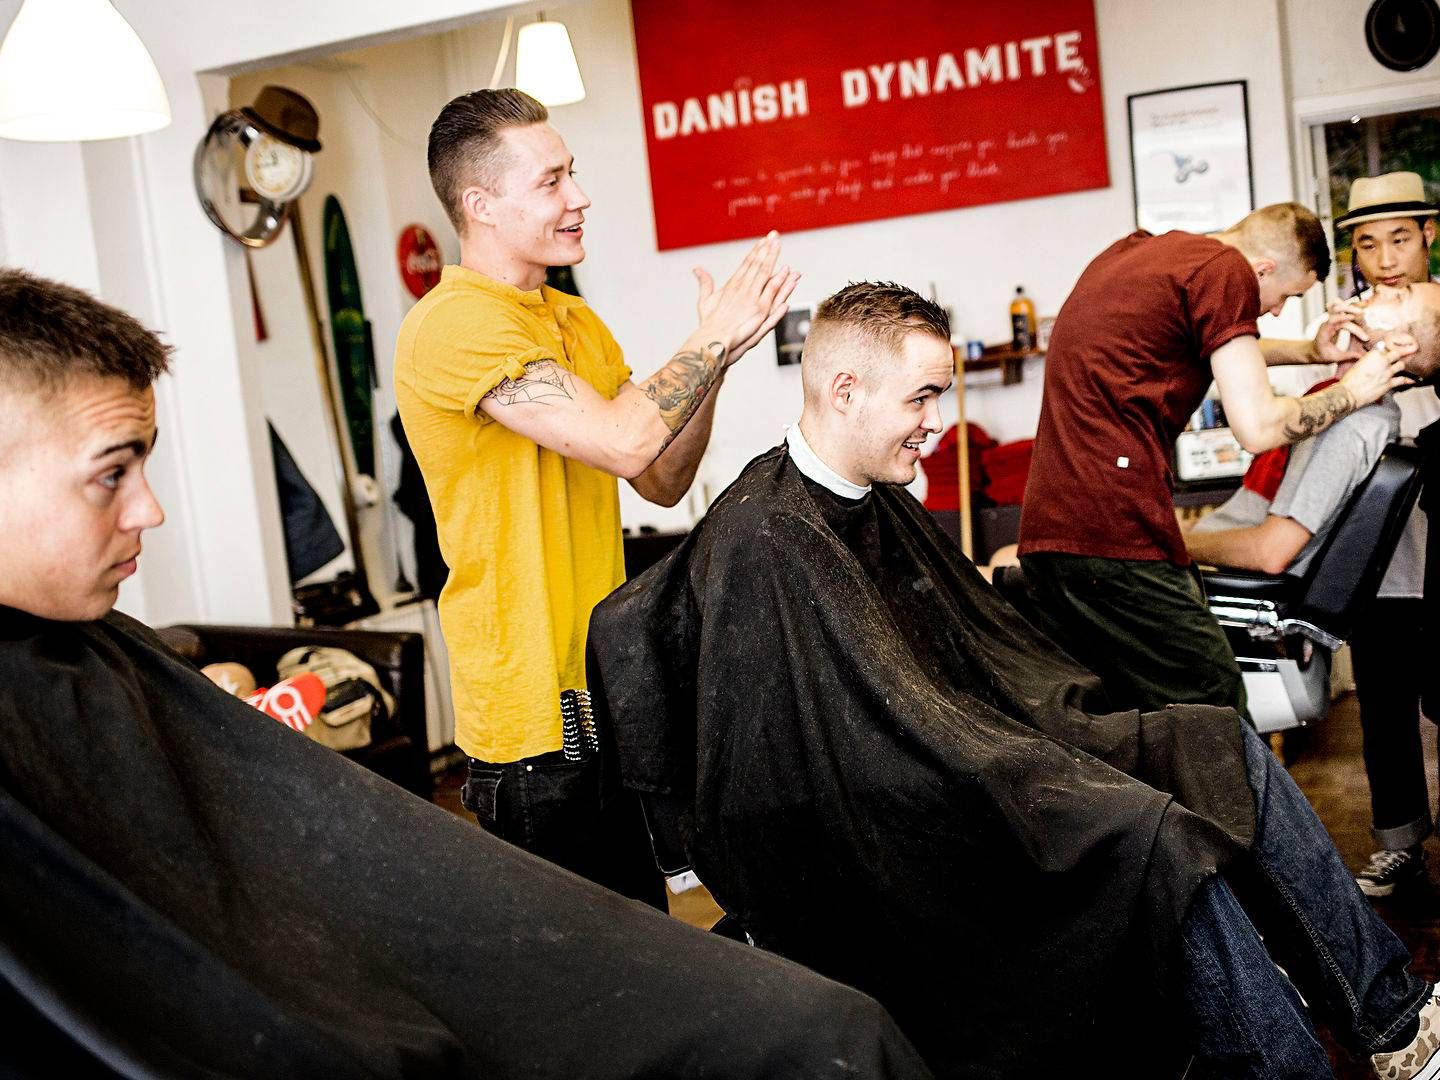 Bl.a. frisører er nogle af de erhvervsdrivende, som er hårdt ramt på grund af coronakrisen | Foto: Daniel Hjorth/Politiken/Ritzau Scanpix